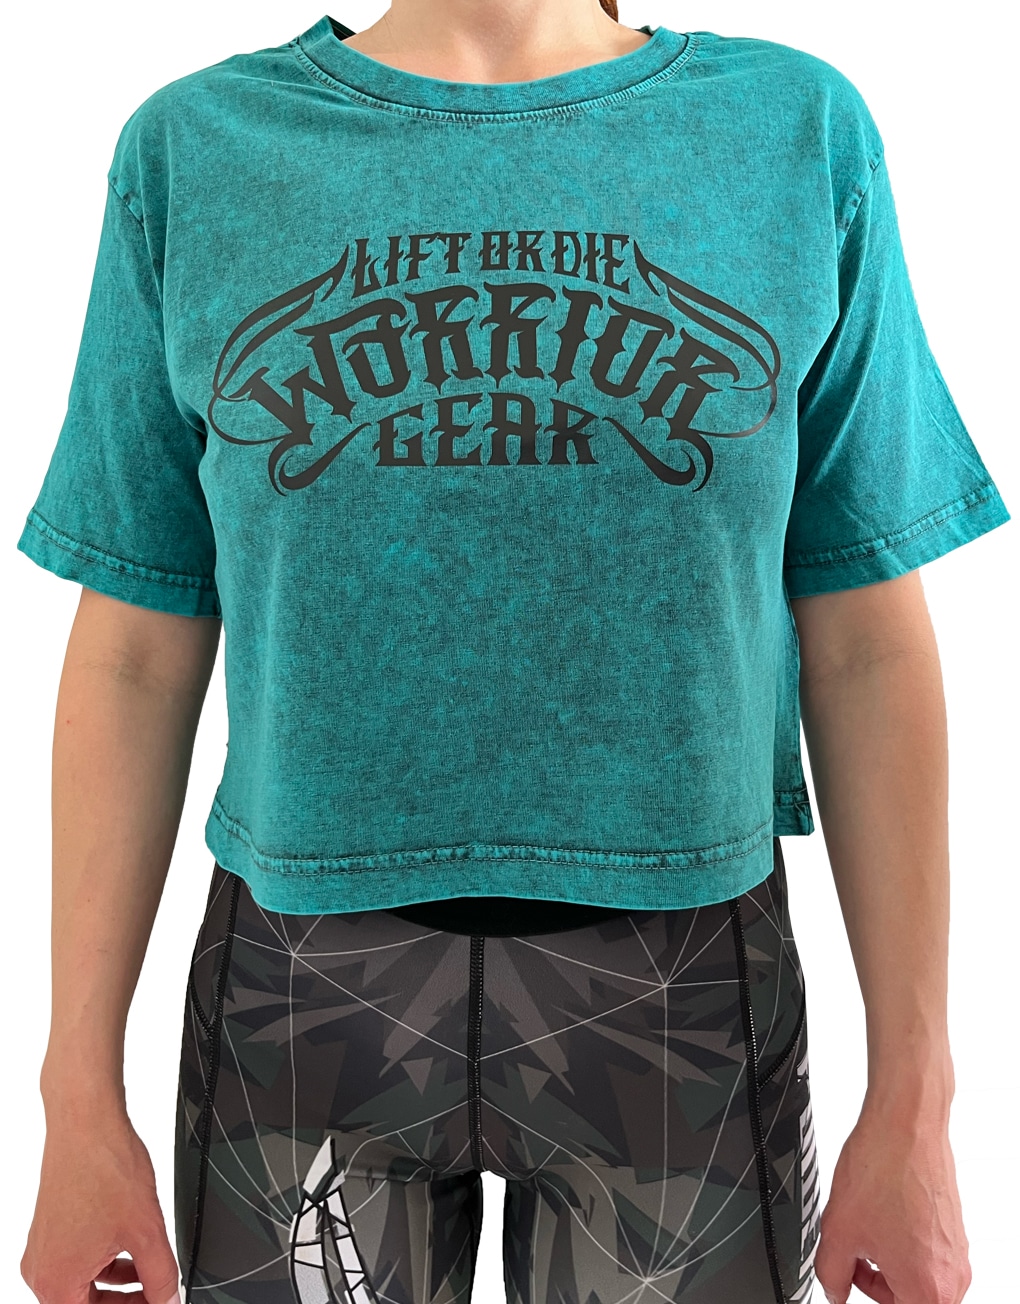 T- shirt Femme Crop Top délavé à l'acide - Fitness